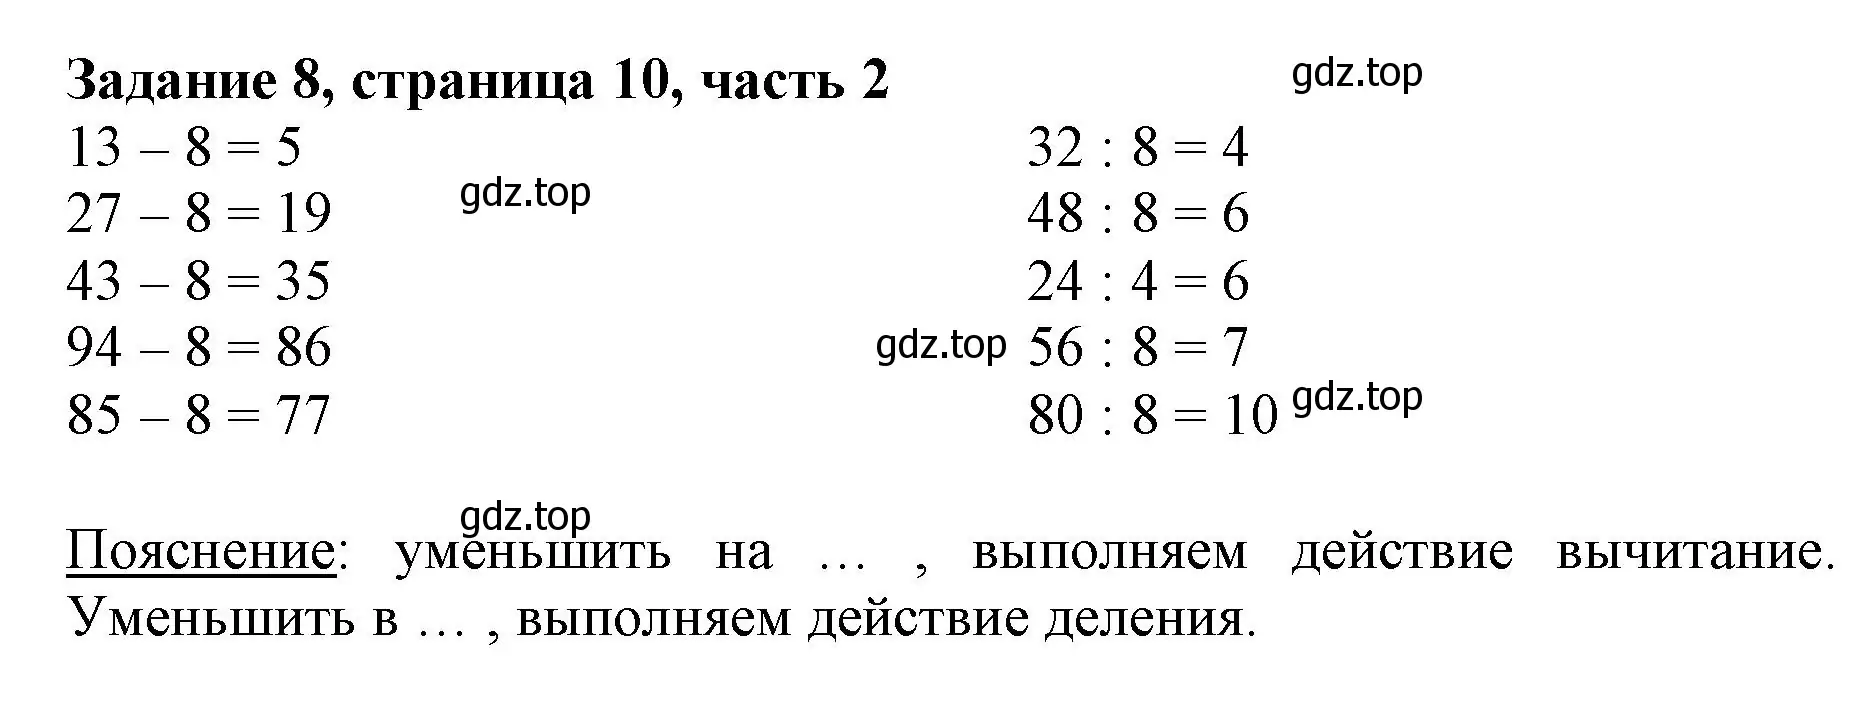 Решение номер 8 (страница 10) гдз по математике 3 класс Моро, Бантова, учебник 2 часть